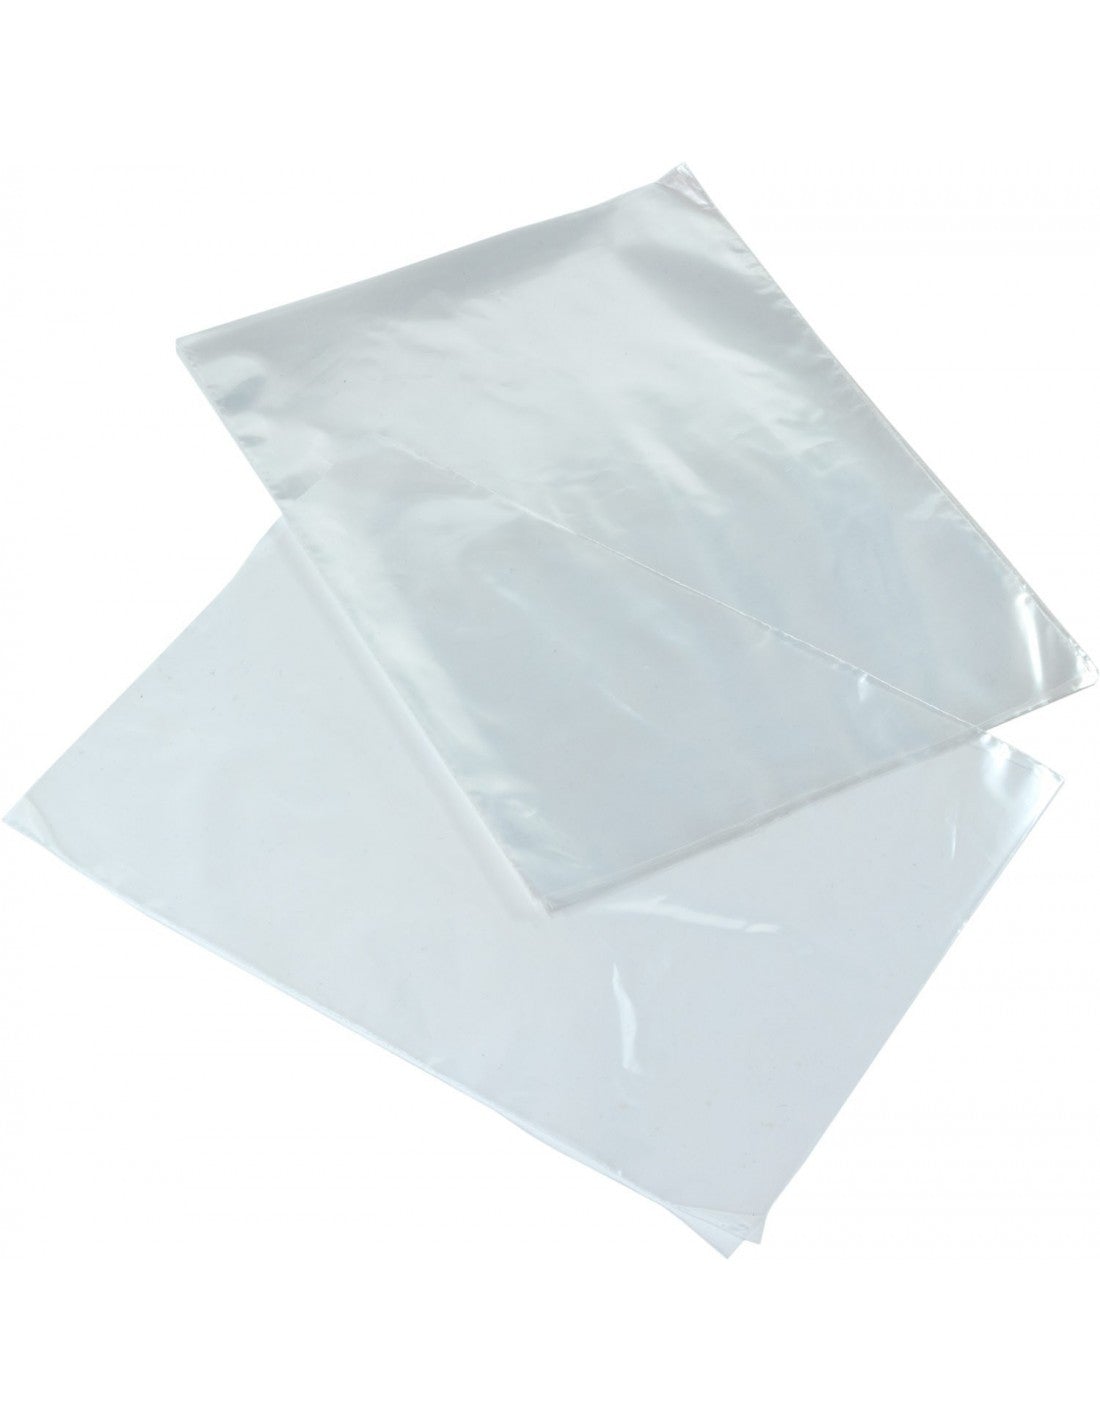 Percibir Parte Meseta 18x25cm -Bolsa Plástico Baja Densidad Transparente | Leal Materias Primas